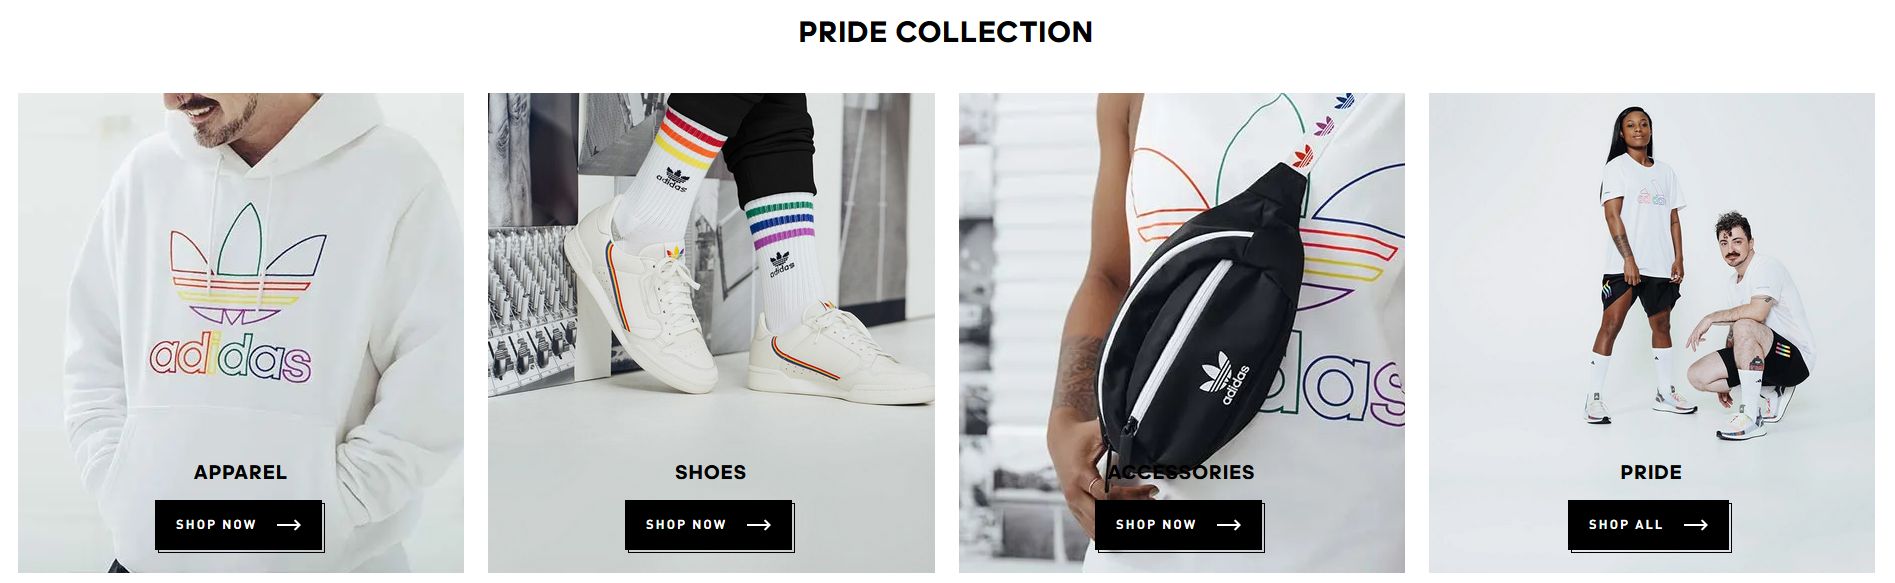 Kolekcia výrobkov adidas k príležitosti LGBT pridu.